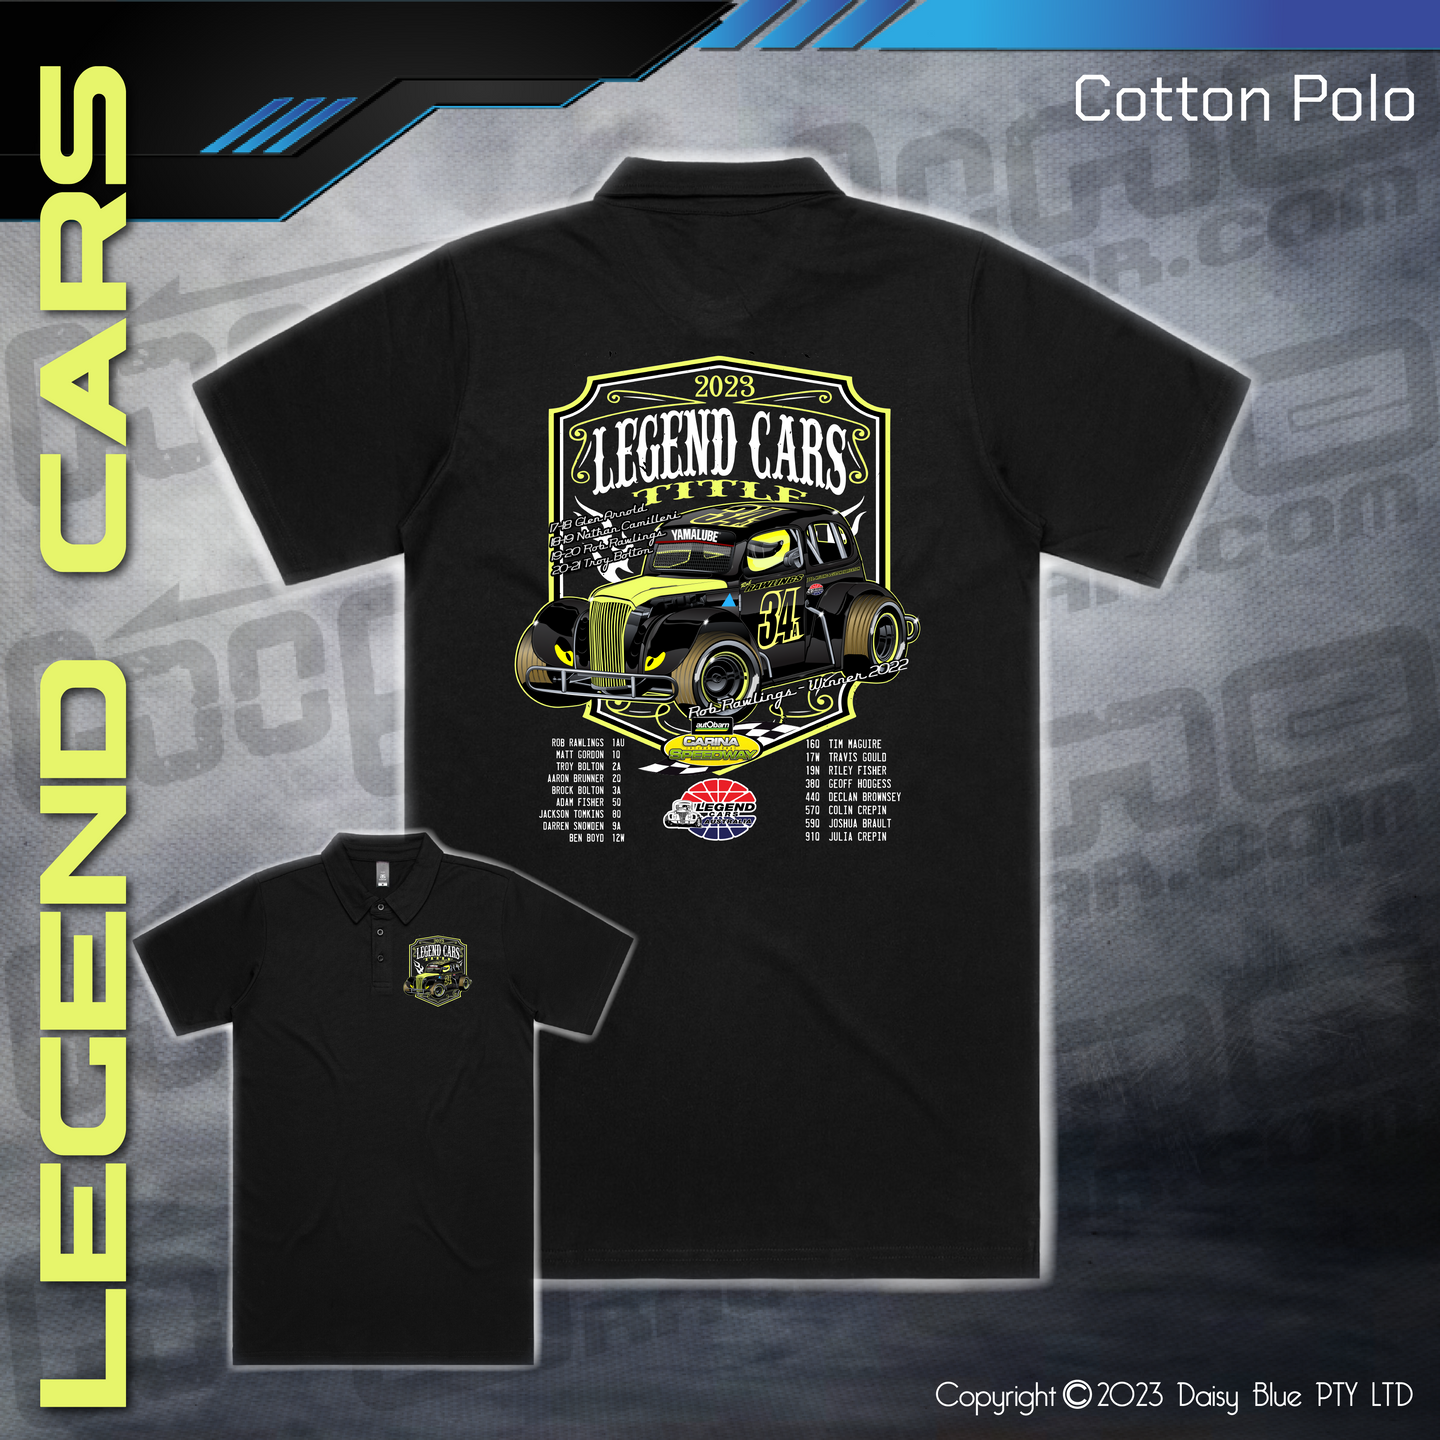 Cotton Polo - Legend Cars Title 2023